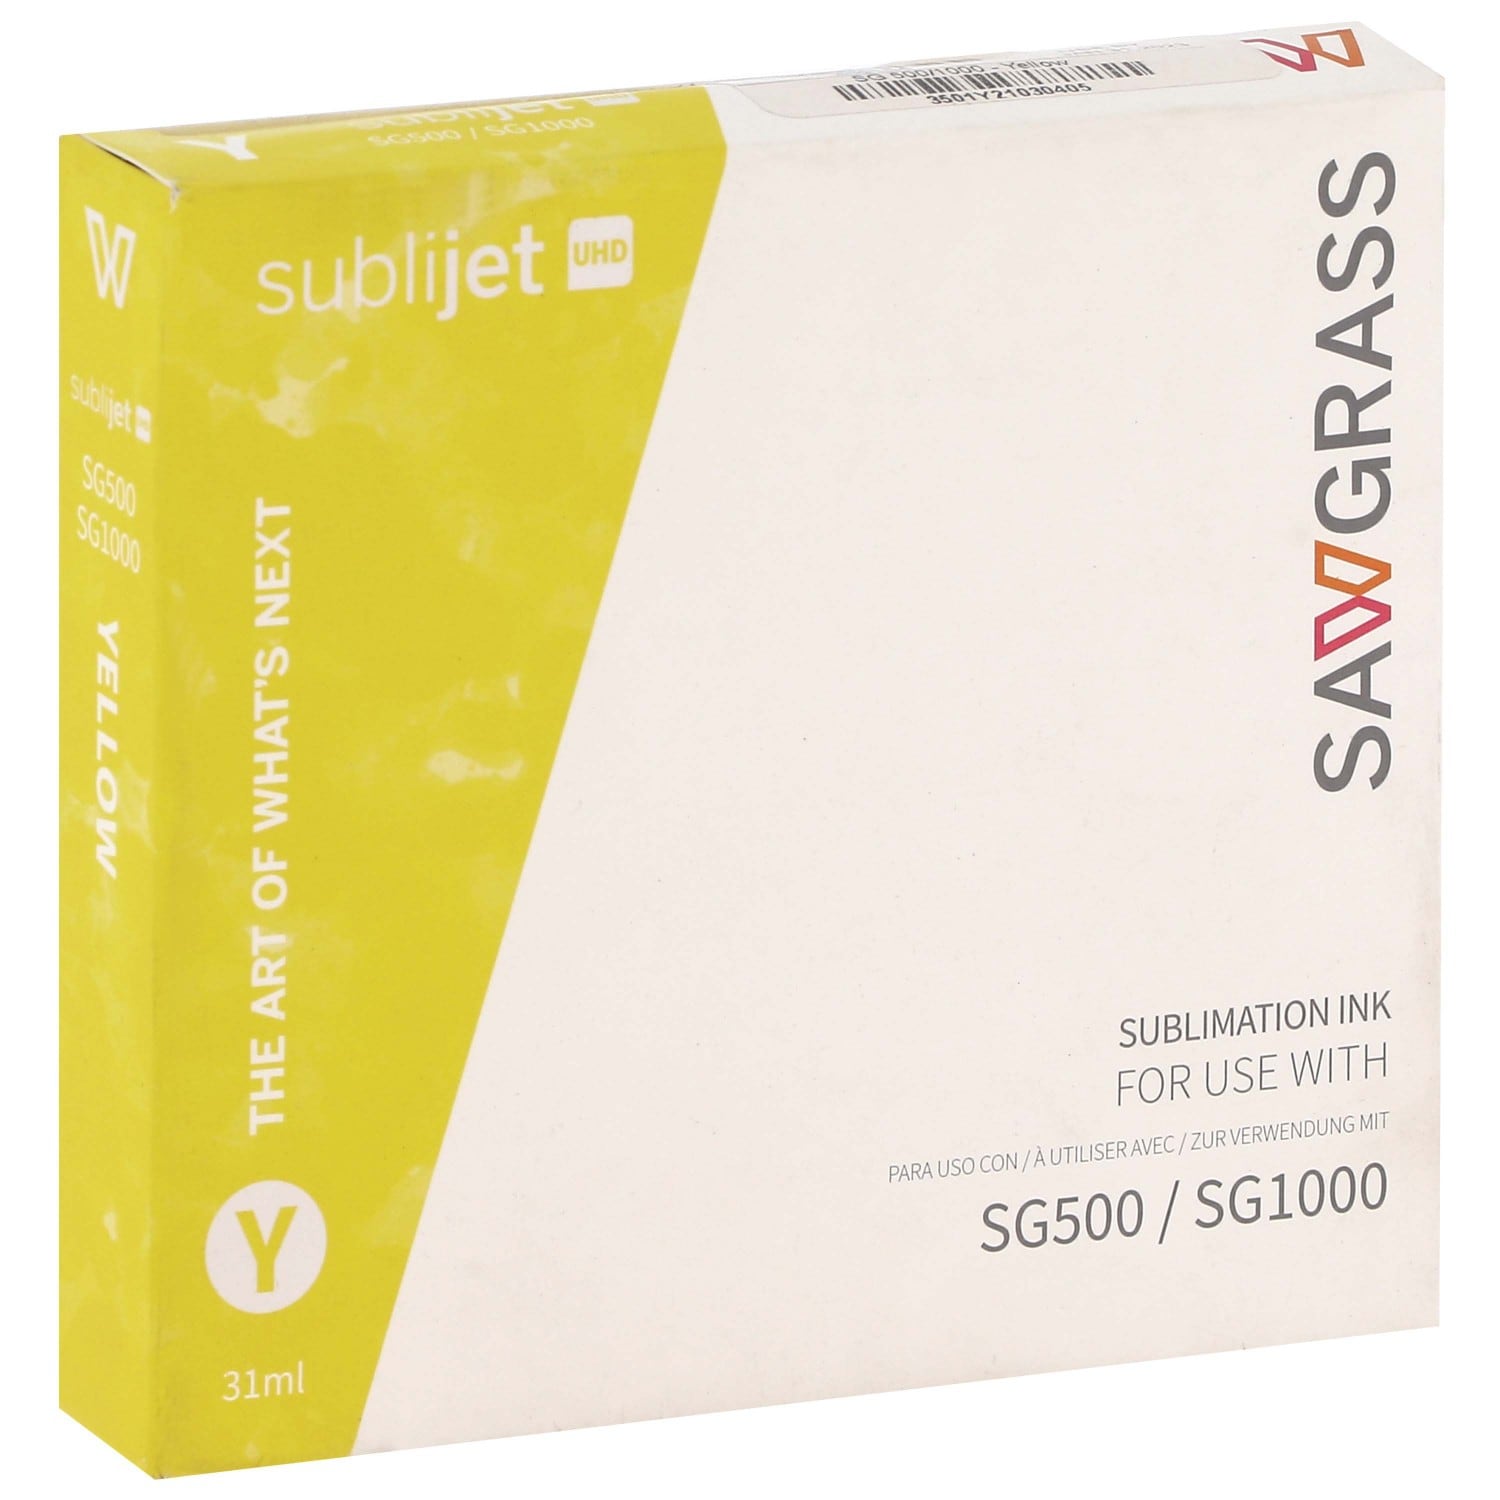 Imprimante sublimation SAWGRASS A4 Virtuoso SG500 pour transfert + jeu  d'encre Sublijet-UHD (4 x 20ml)